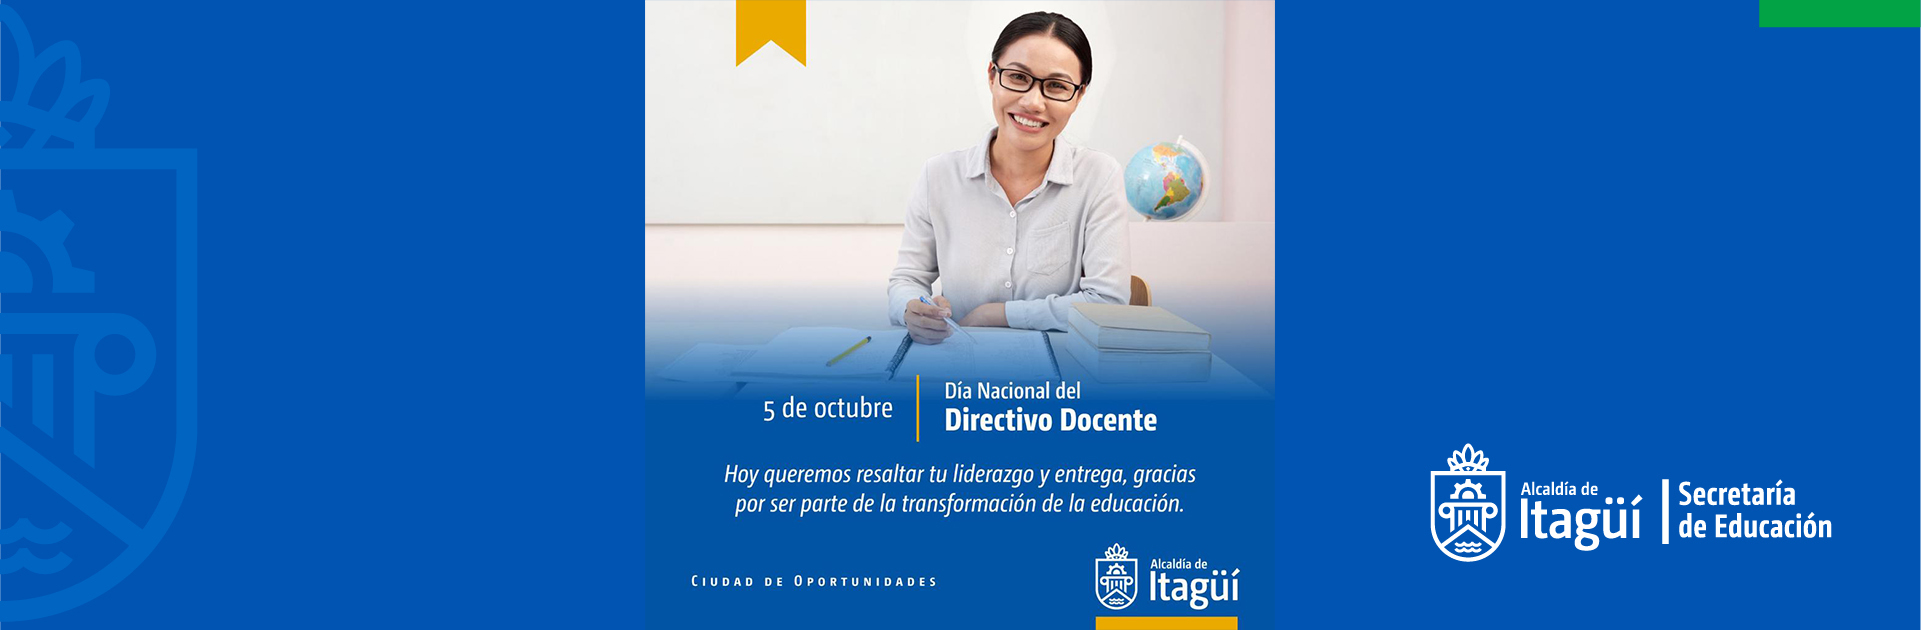 5 de octubre - Día nacional del directivo docente